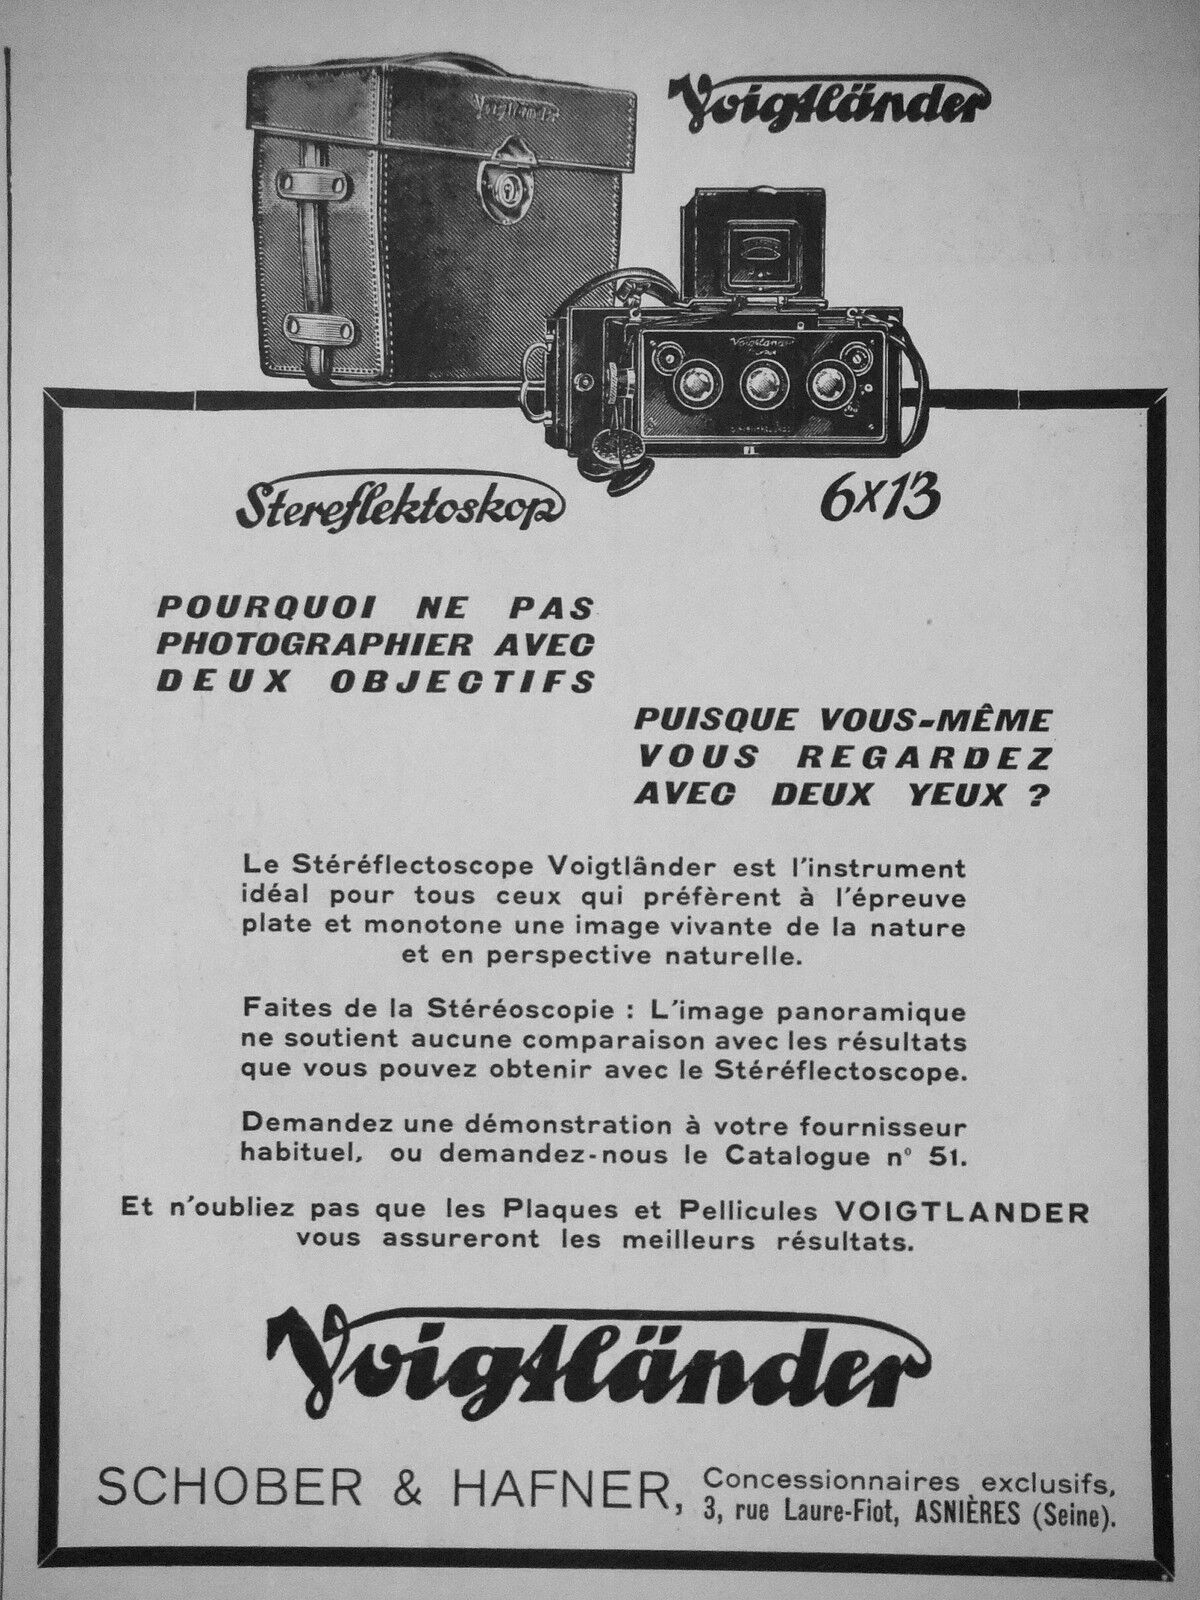 ADVERTISING 1932 LE STEREREFLECTOSCOPE VOIGTLÄNDER SCHOBER & HAFNER - ADVERTISING